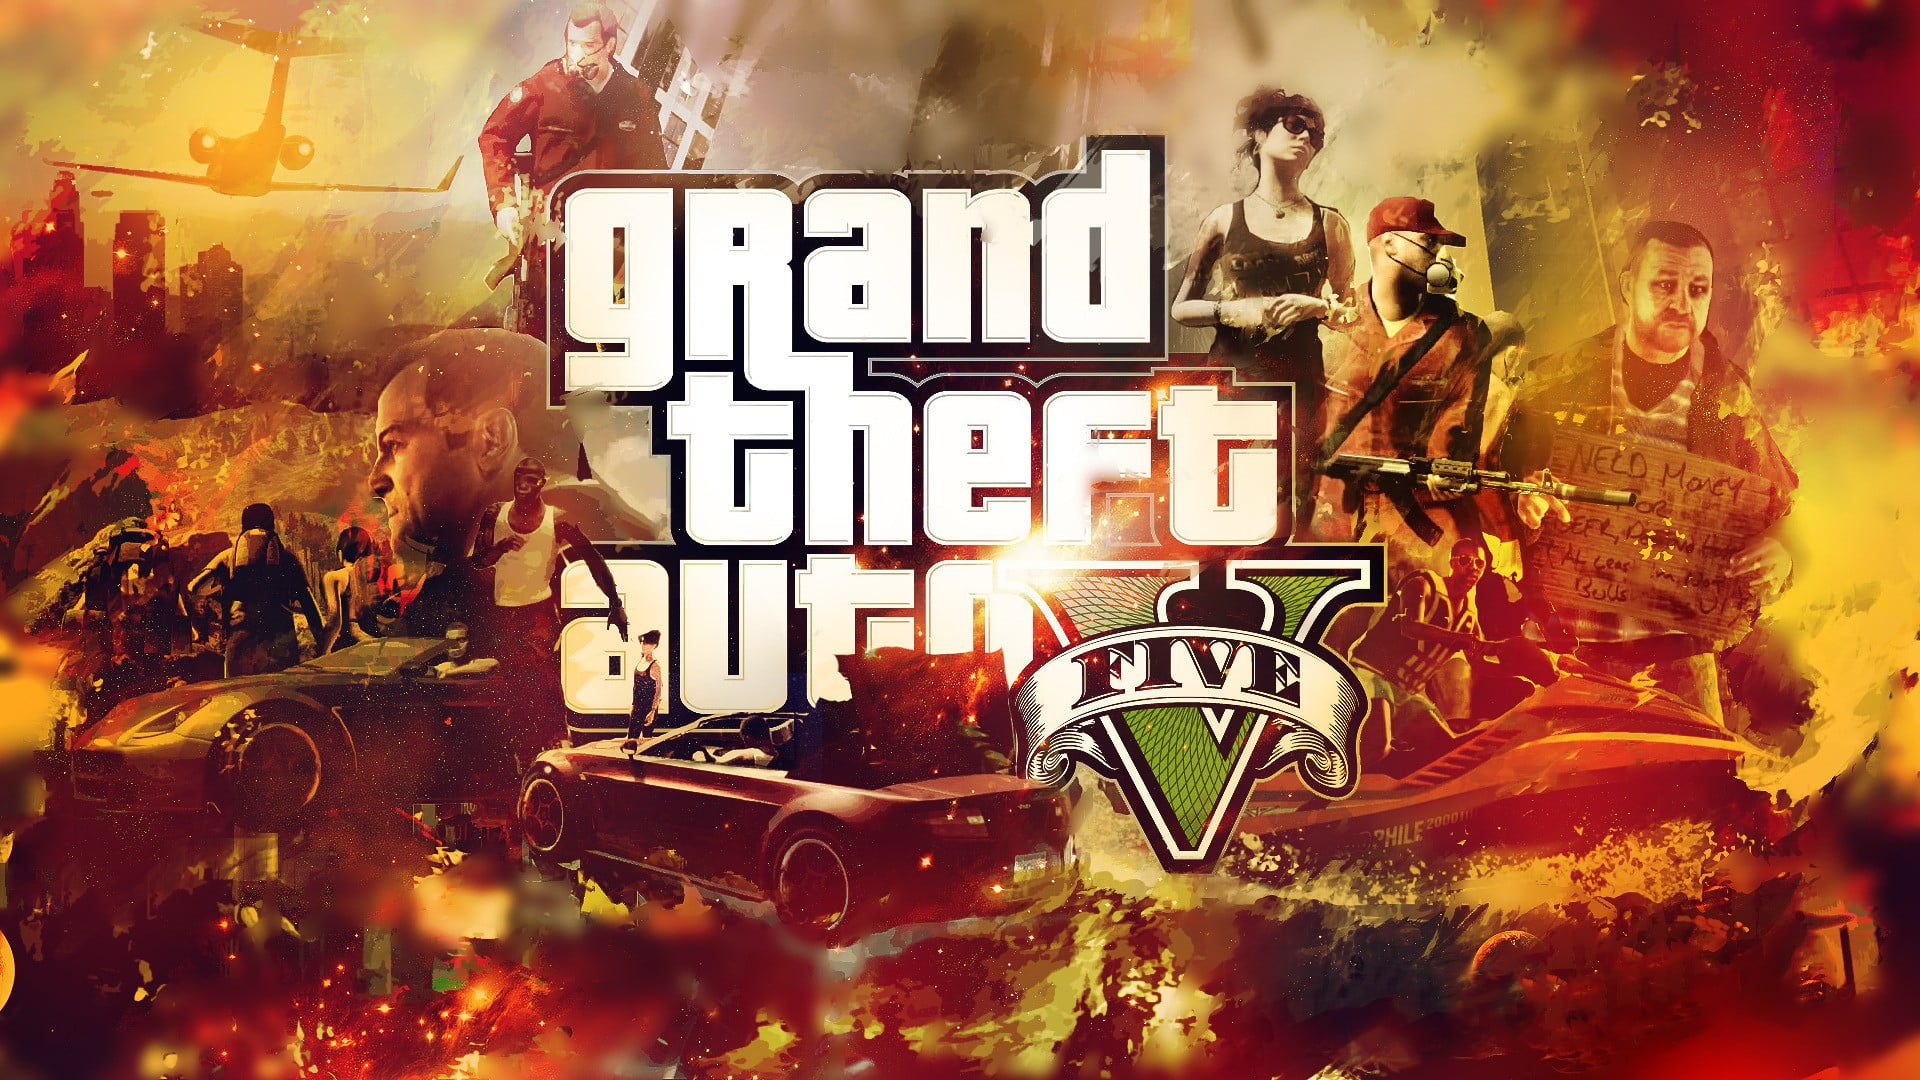 Grand Theft Auto V Gta Rockstar Games Wallpaper Hd Games 4k - Vrogue